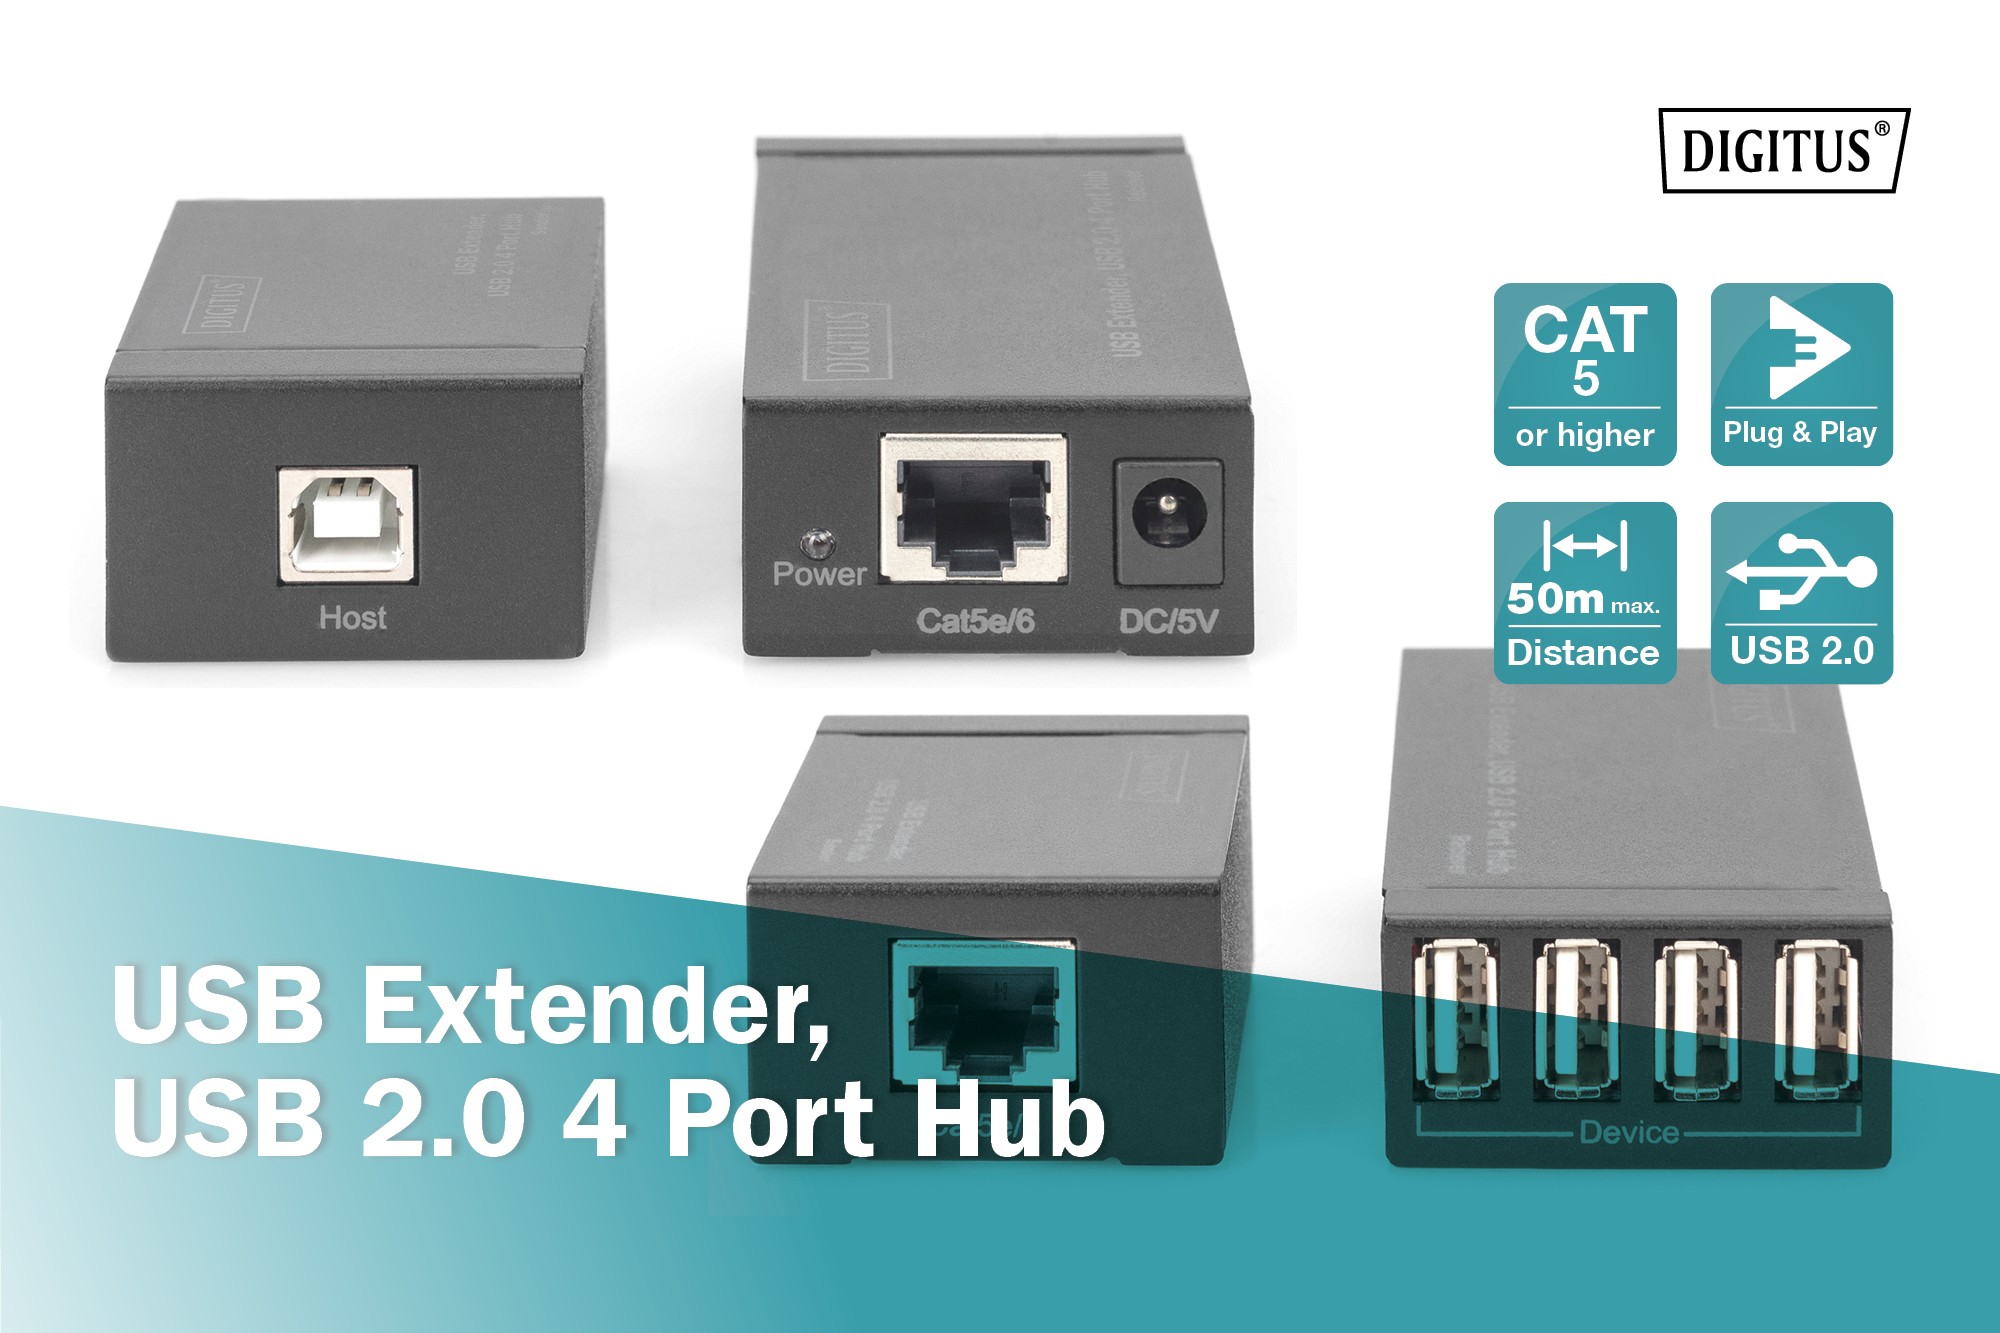 DA-70143  4-Port USB 2.0 Cat 5 Extender (up to 50m) Digitus